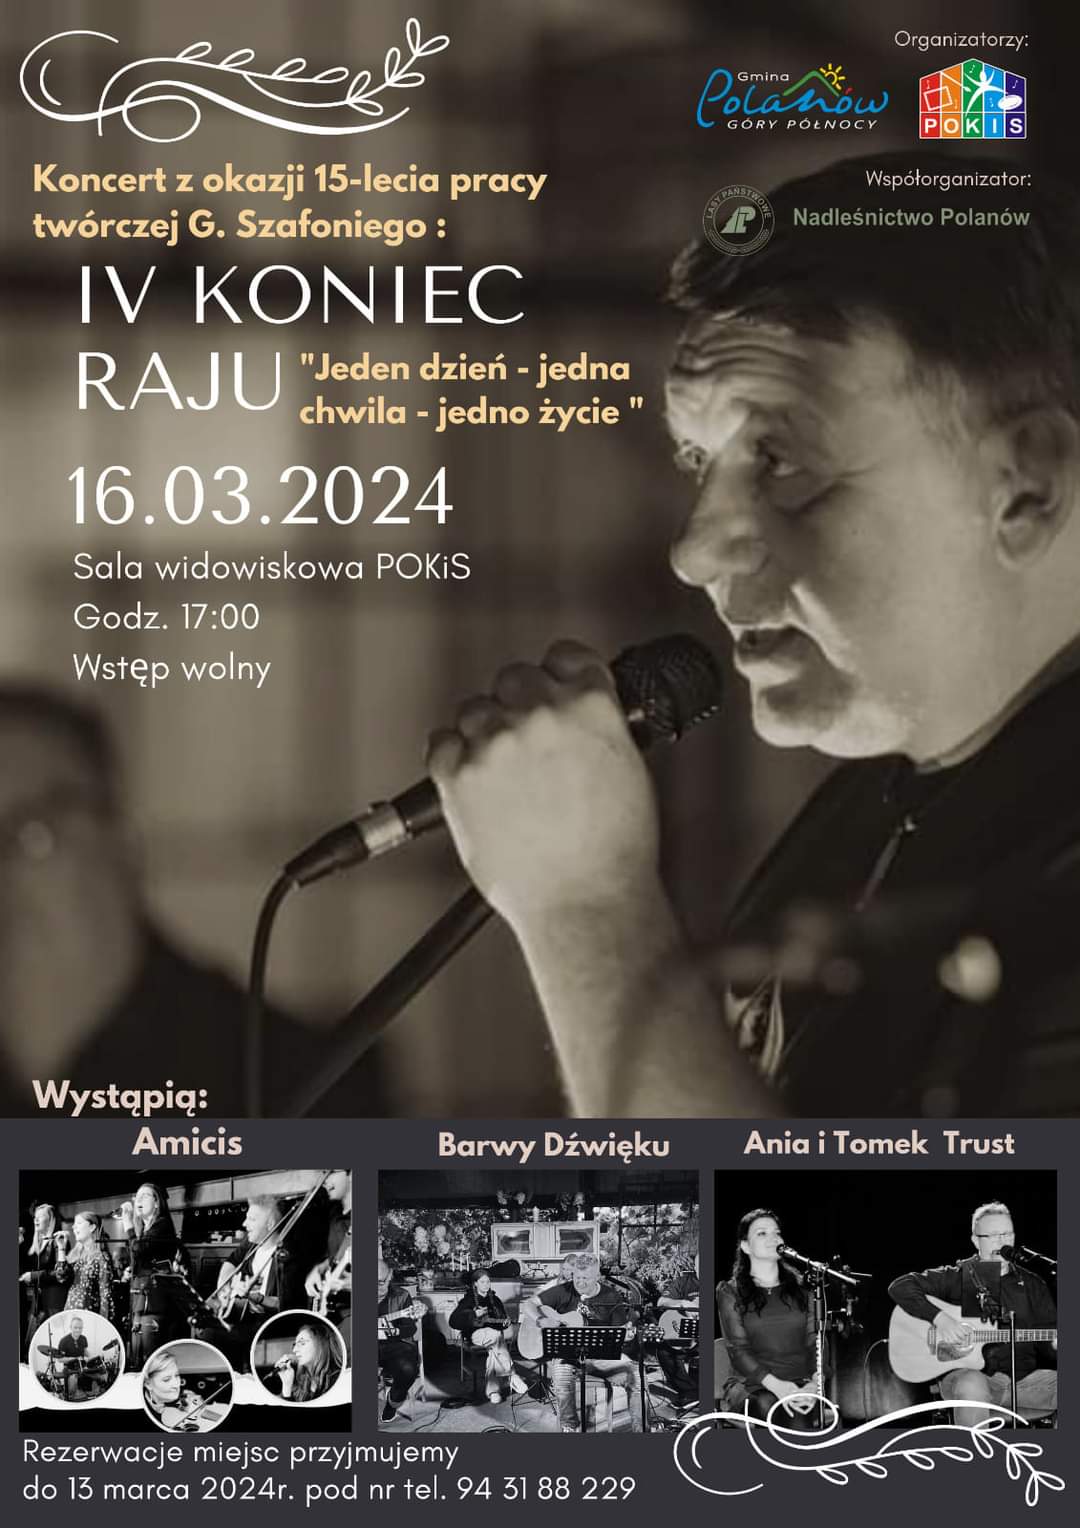 Plakat z zaproszeniem na koncert w Polanowie z okazji 15 lecia pracy twórczej G.Szafoniego 16 marca 2024